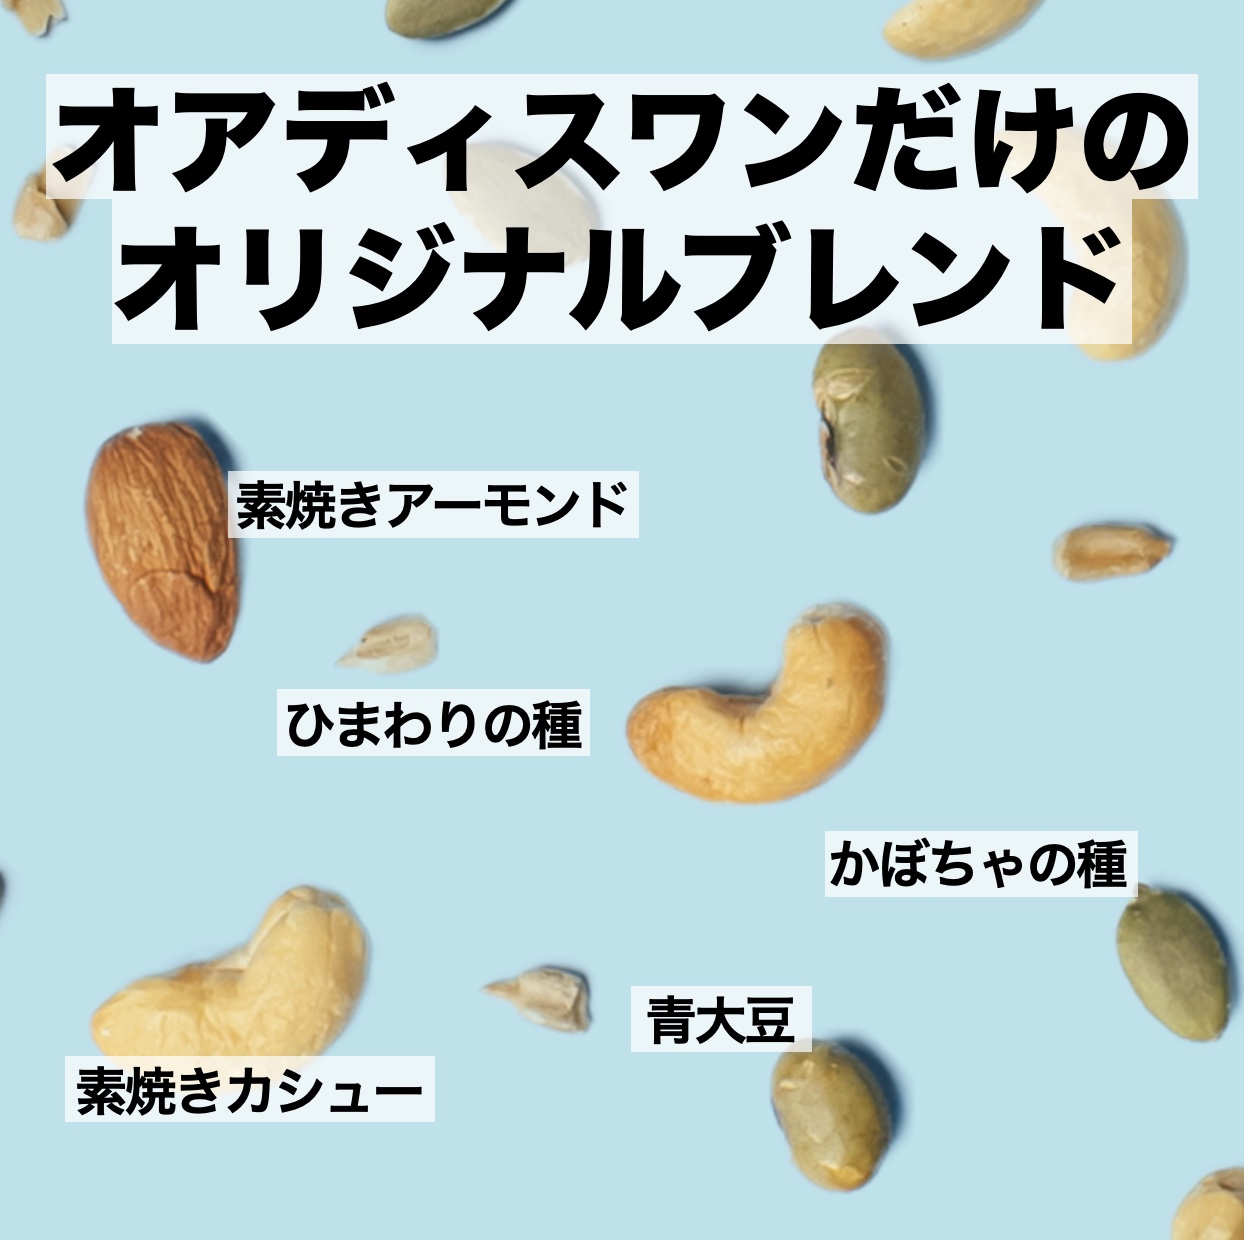 更年期専門店オアディスワンのおきかえナッツ「たんぱくしっつ」に含まれるナッツのイメージ